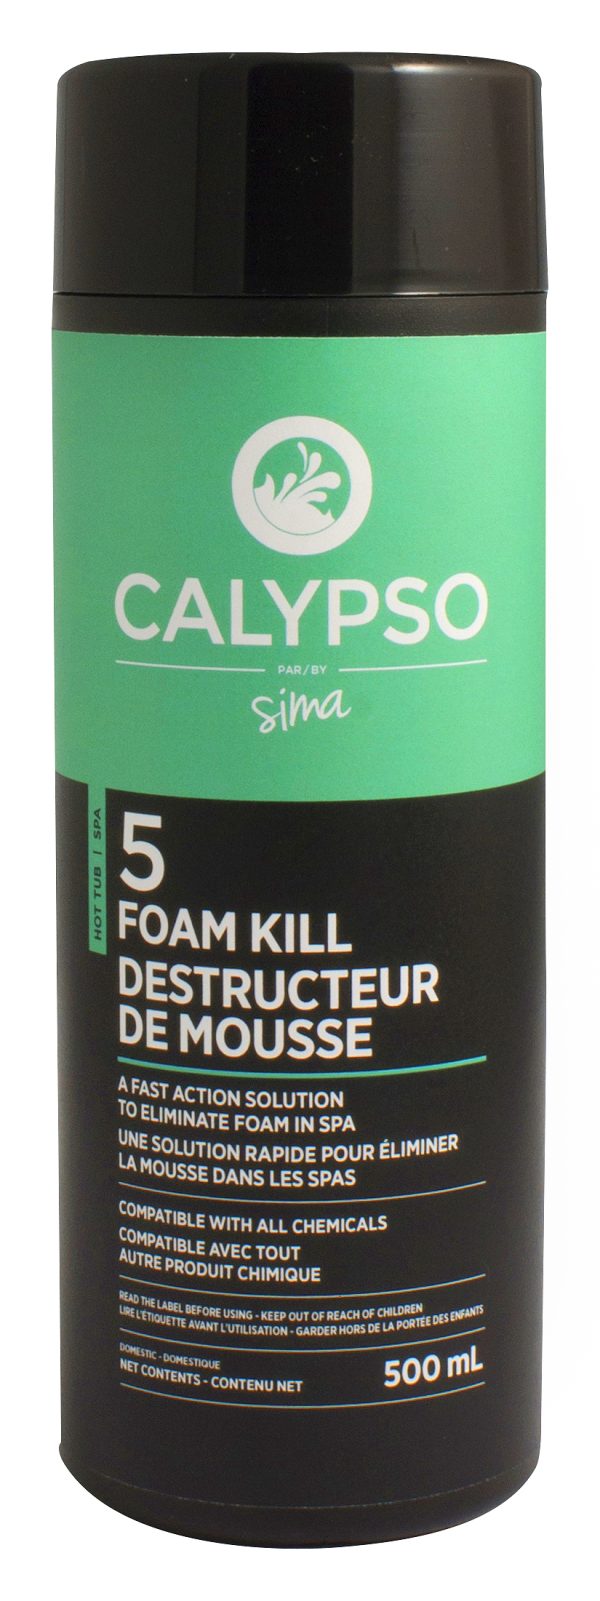 Calypso Destructeur de mousse #5 500ML - Produits de spa - Entretien de spa - Sima PISCINES & SPAS